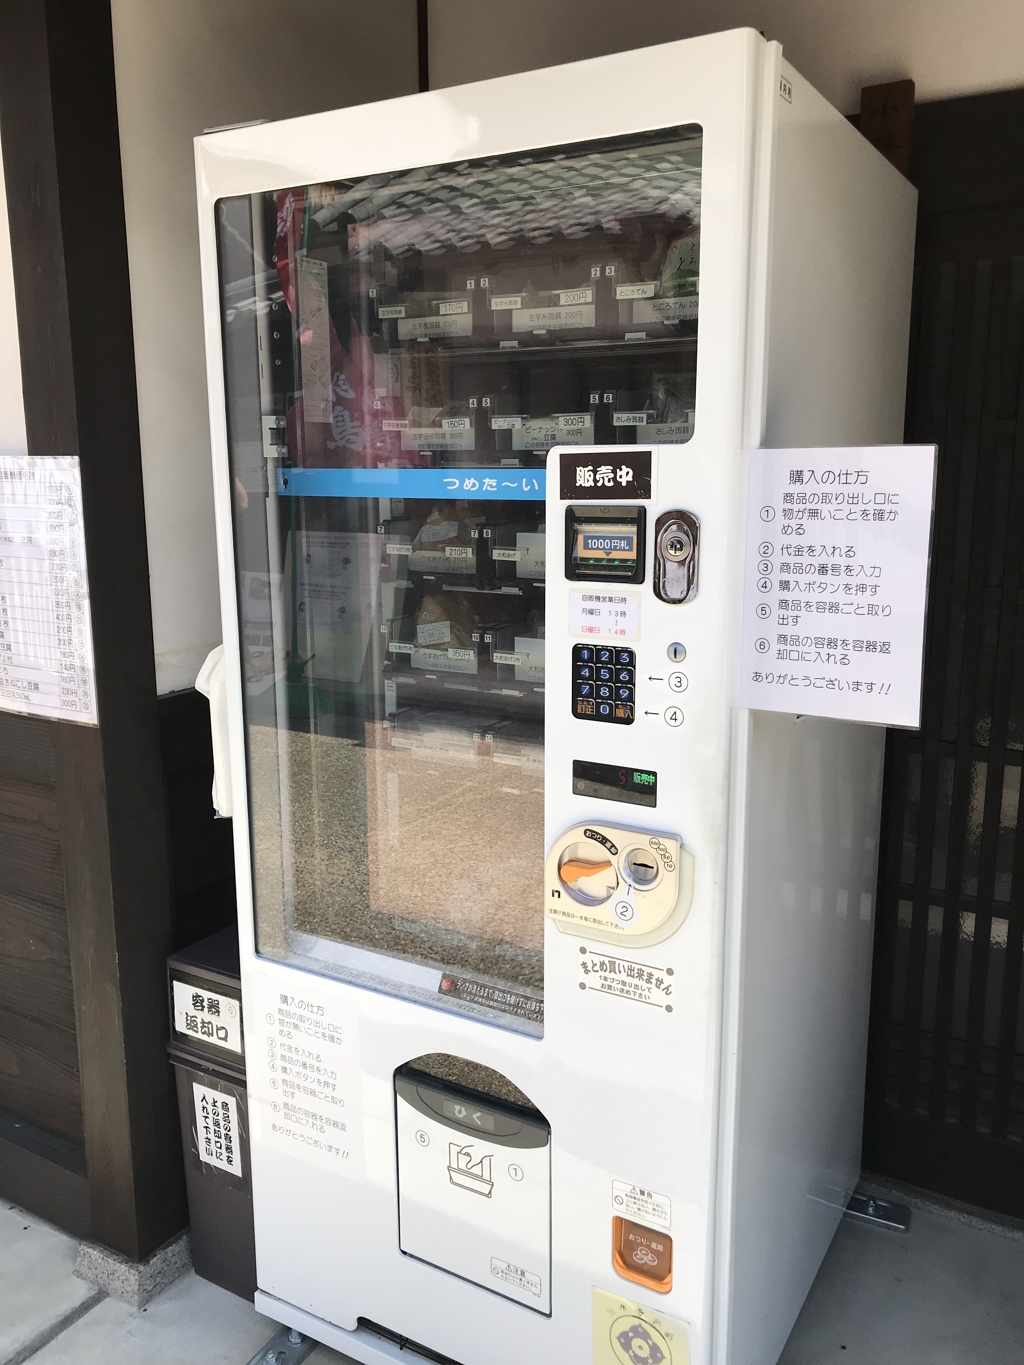 今井町で見つけた豆腐の自動販売機